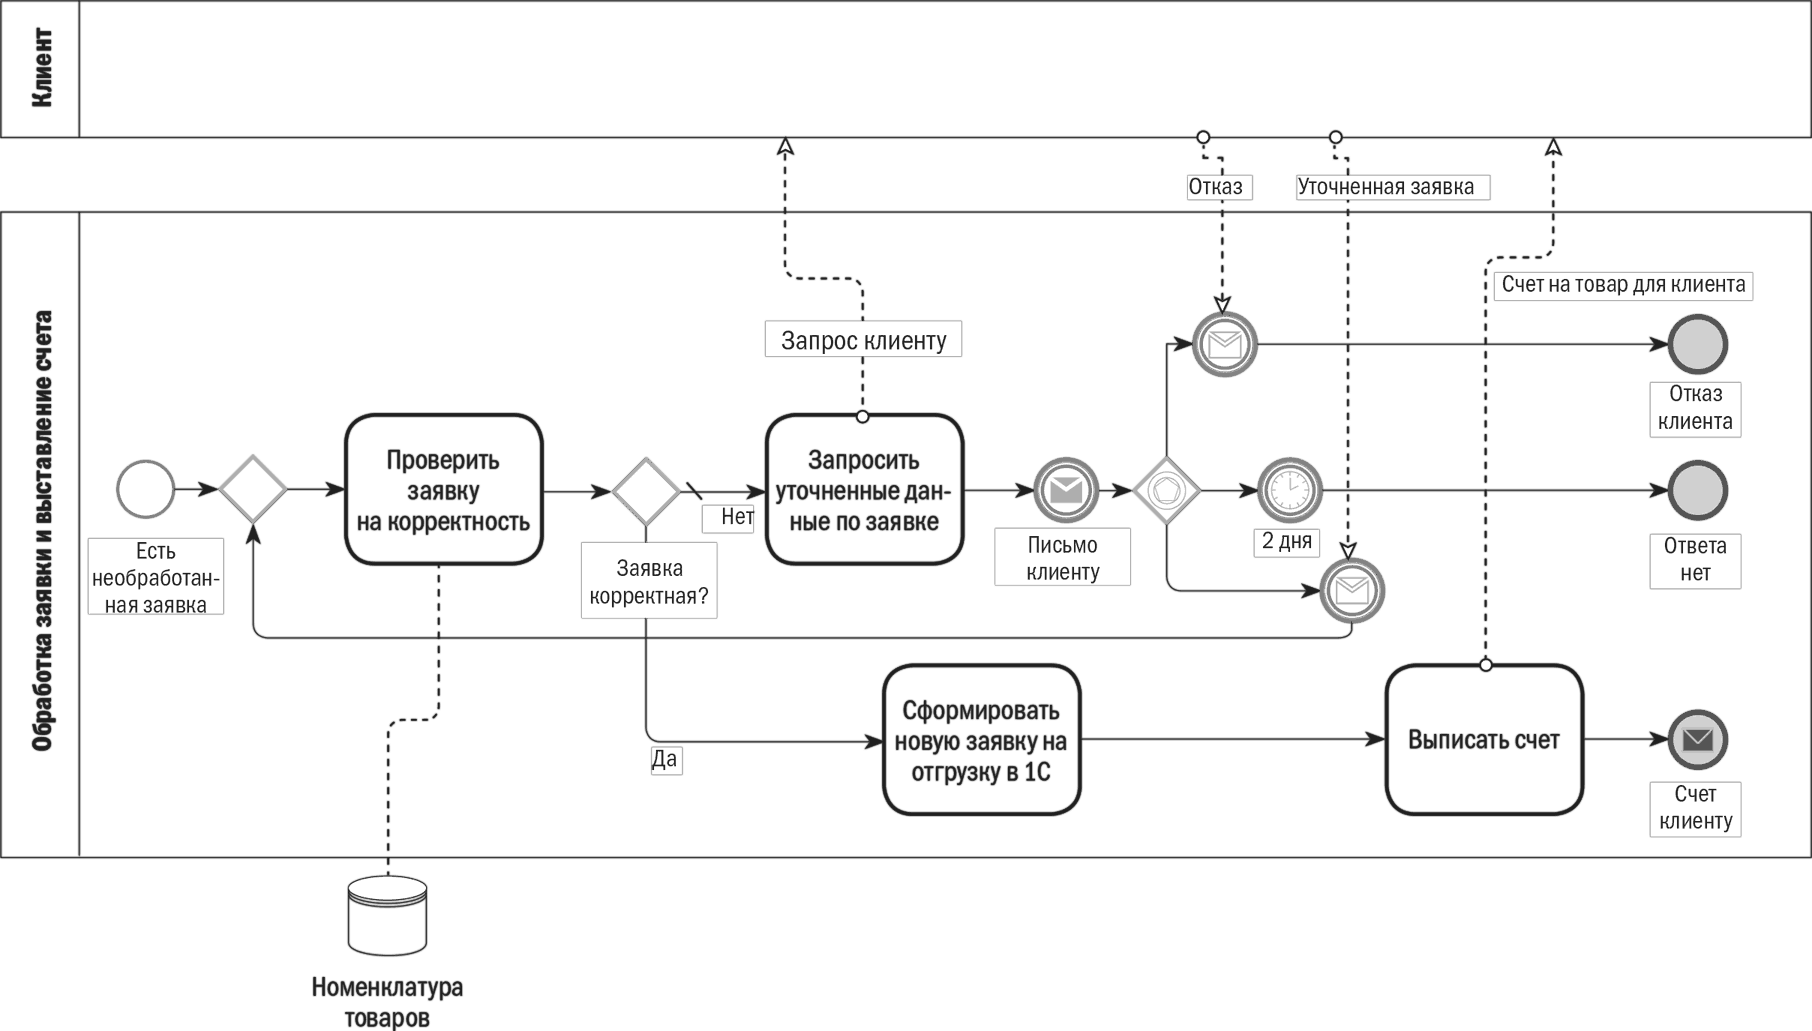 Обслуживание по счету клиента. Бизнес процесс BPMN 2.0. Диаграмма процесса BPMN. Процесс в нотации BPMN. Моделирование бизнес-процессов в нотации BPMN.